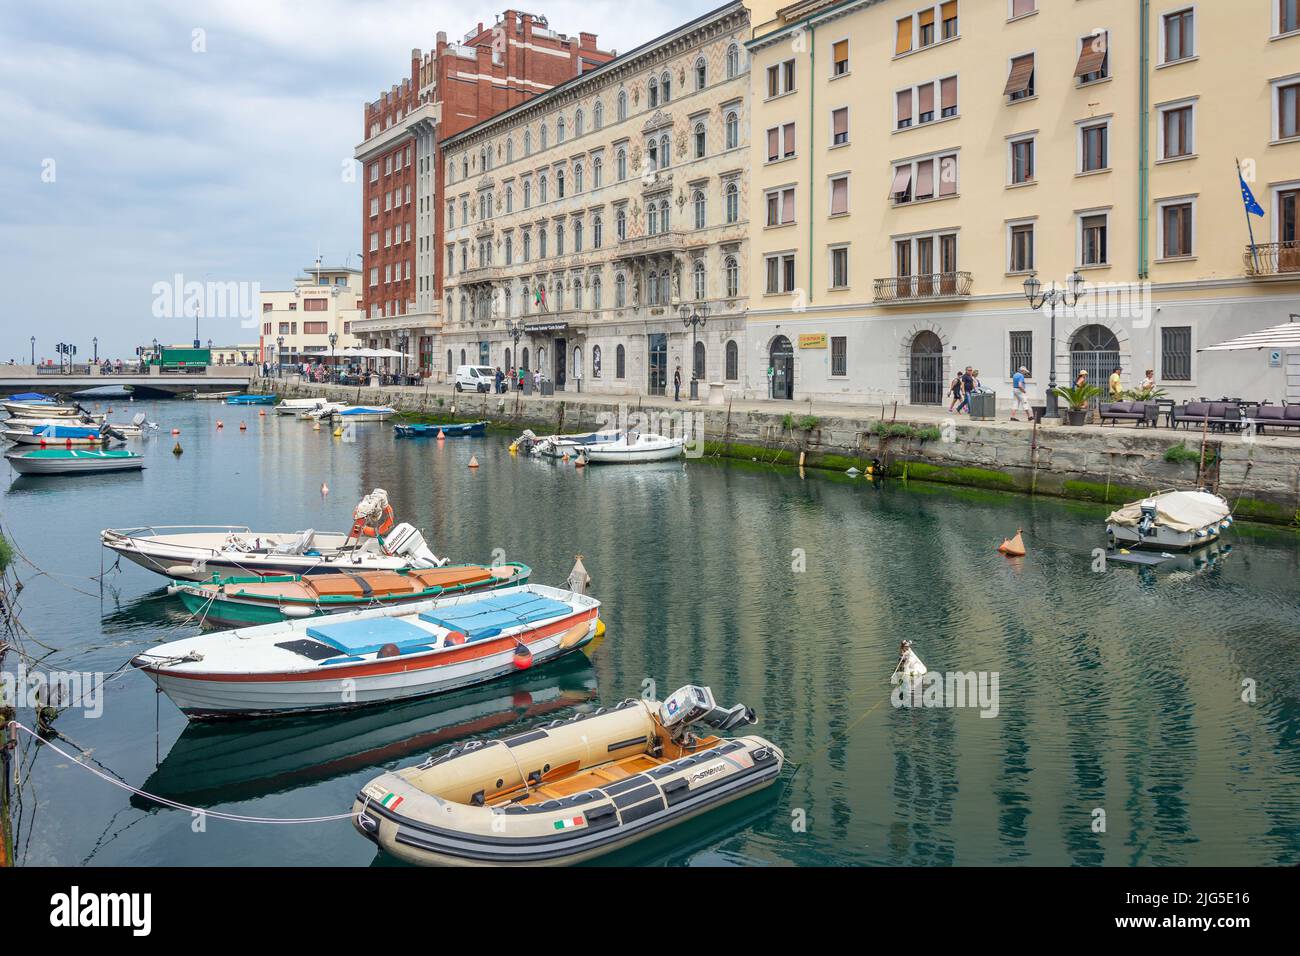 Small boats moored in Canal Grande di Trieste, Trieste, Friuli Venezia Giulia Region, Italy Stock Photo